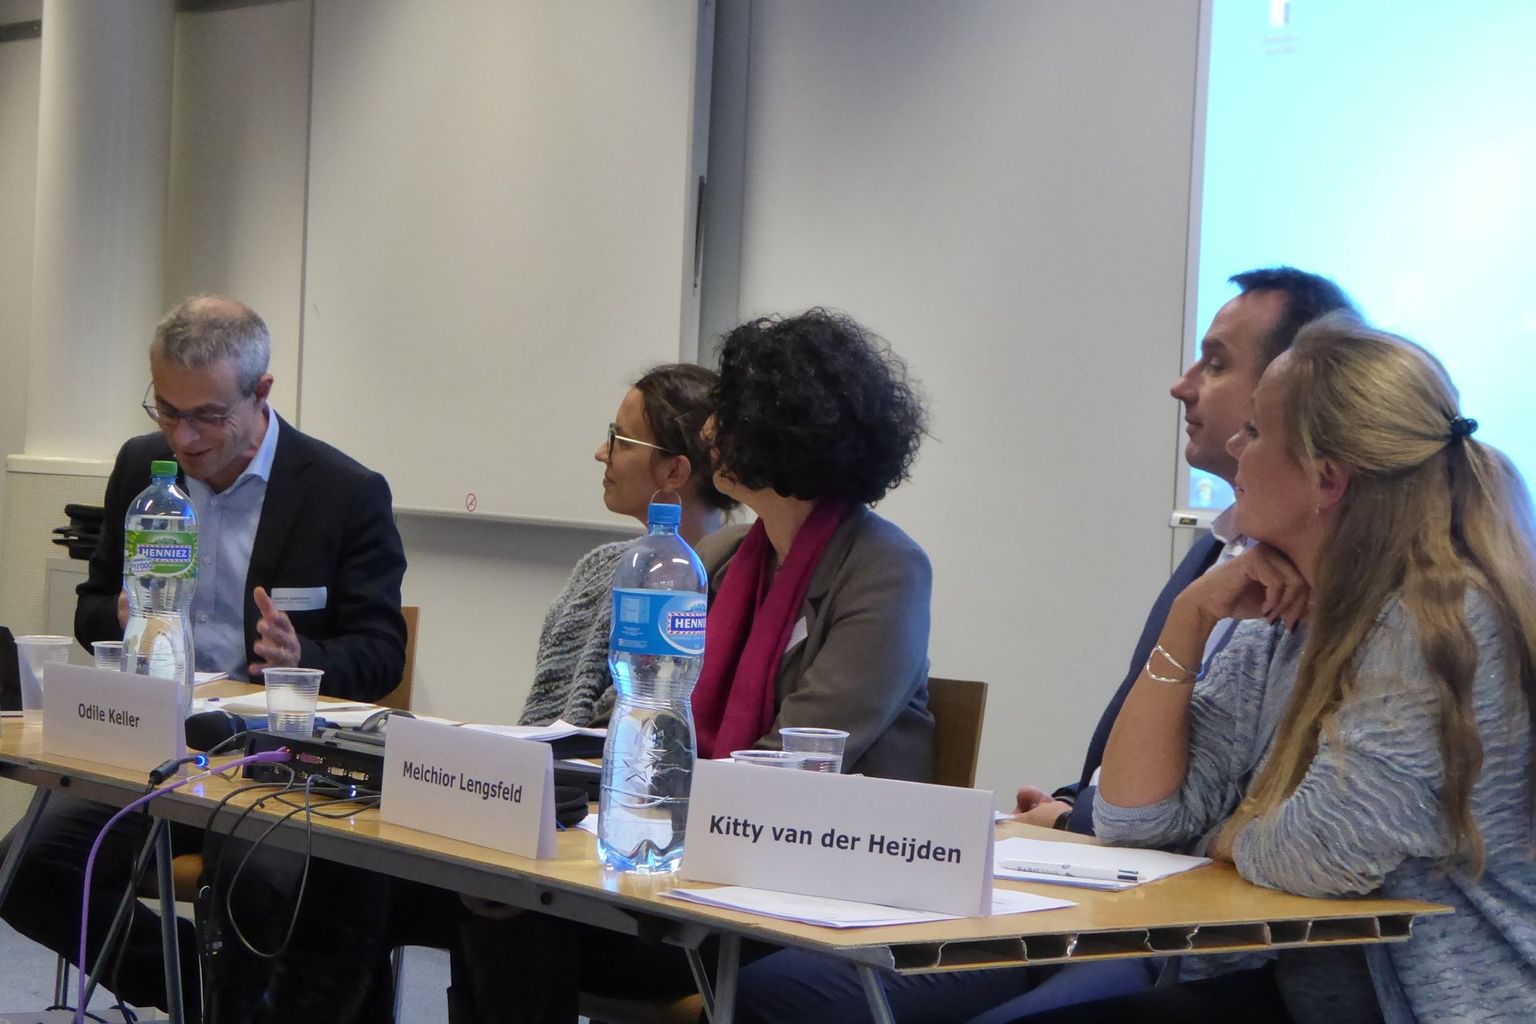 Panel with Kitty van der Heijden, Melchior Lengsfeld, Odile Keller, Isabel Günther and Laurent Goetschel